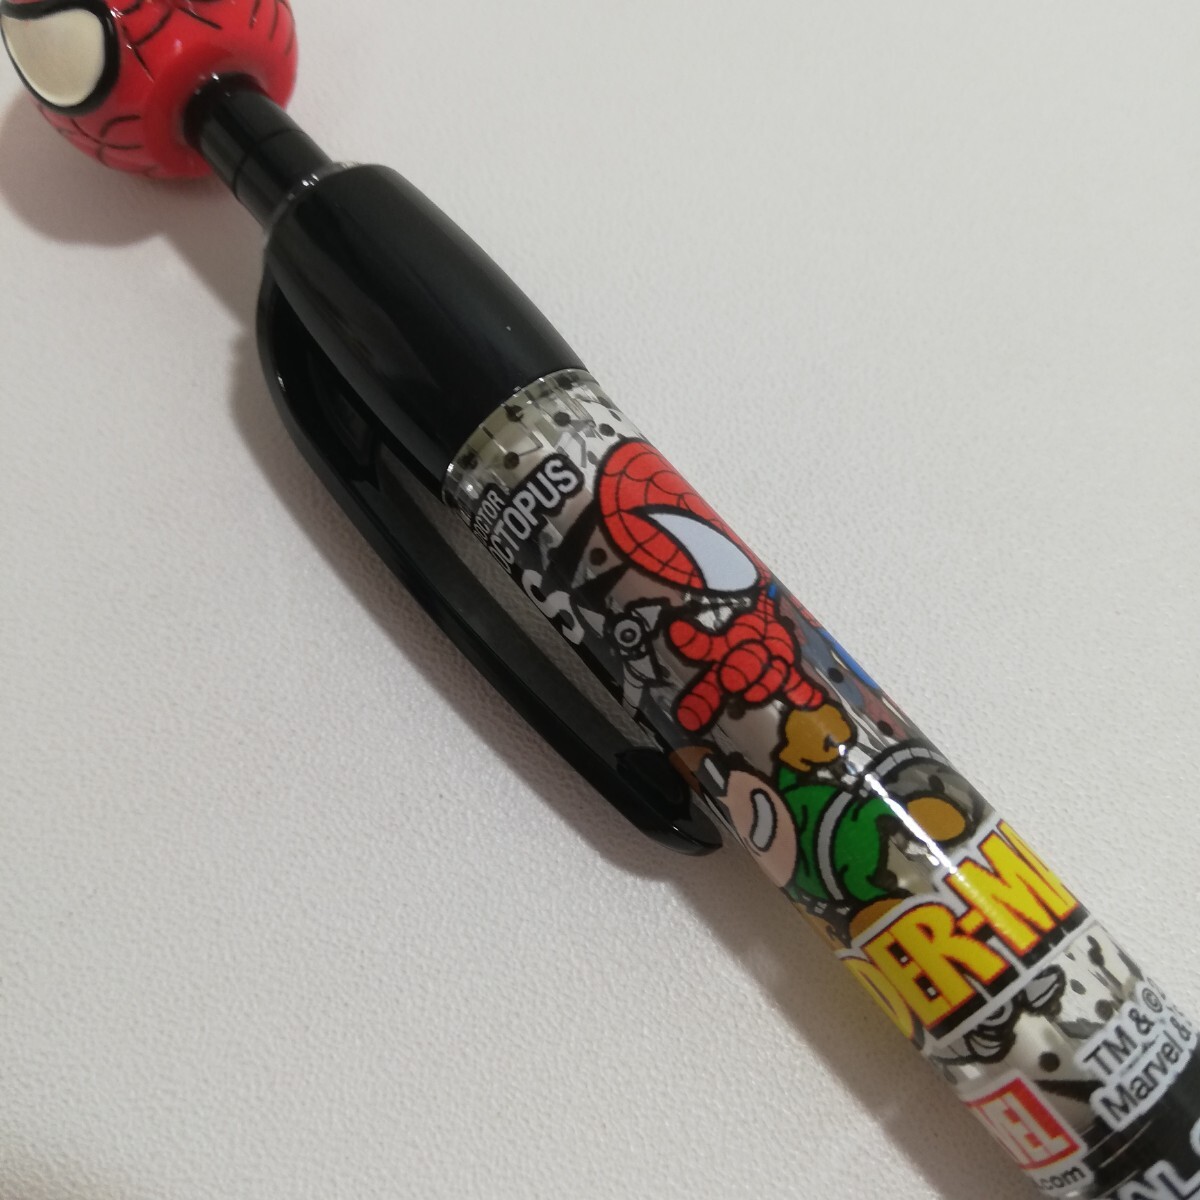 2012 год MARVEL универсальный Studio Japan ограничение Человек-паук эмблема шариковая ручка чернила нет текущее состояние товар 